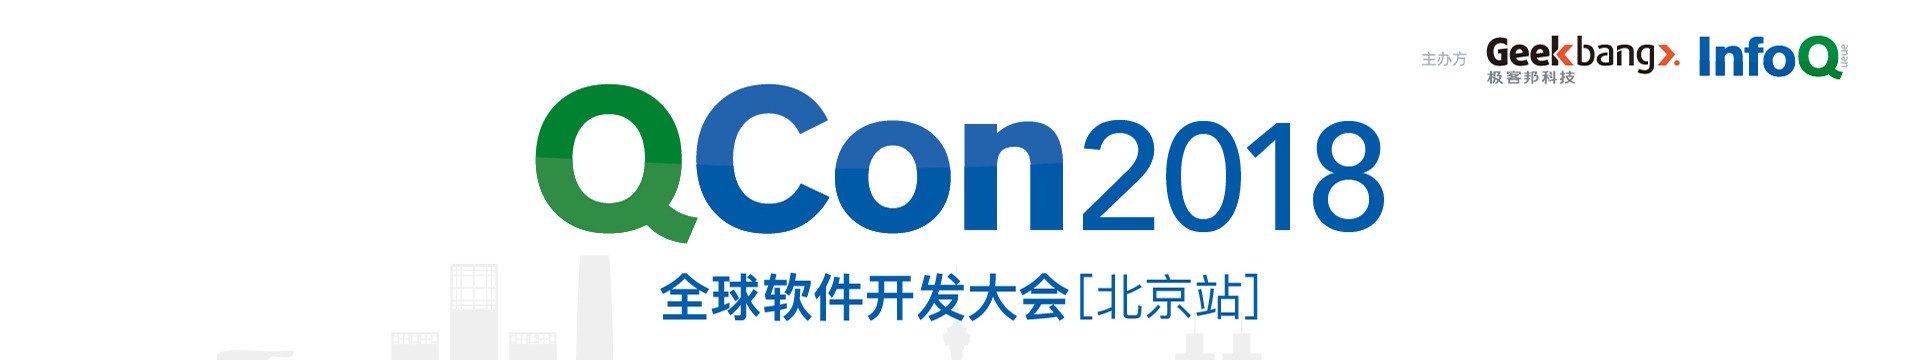 Qcon2018全球软件开发大会·北京